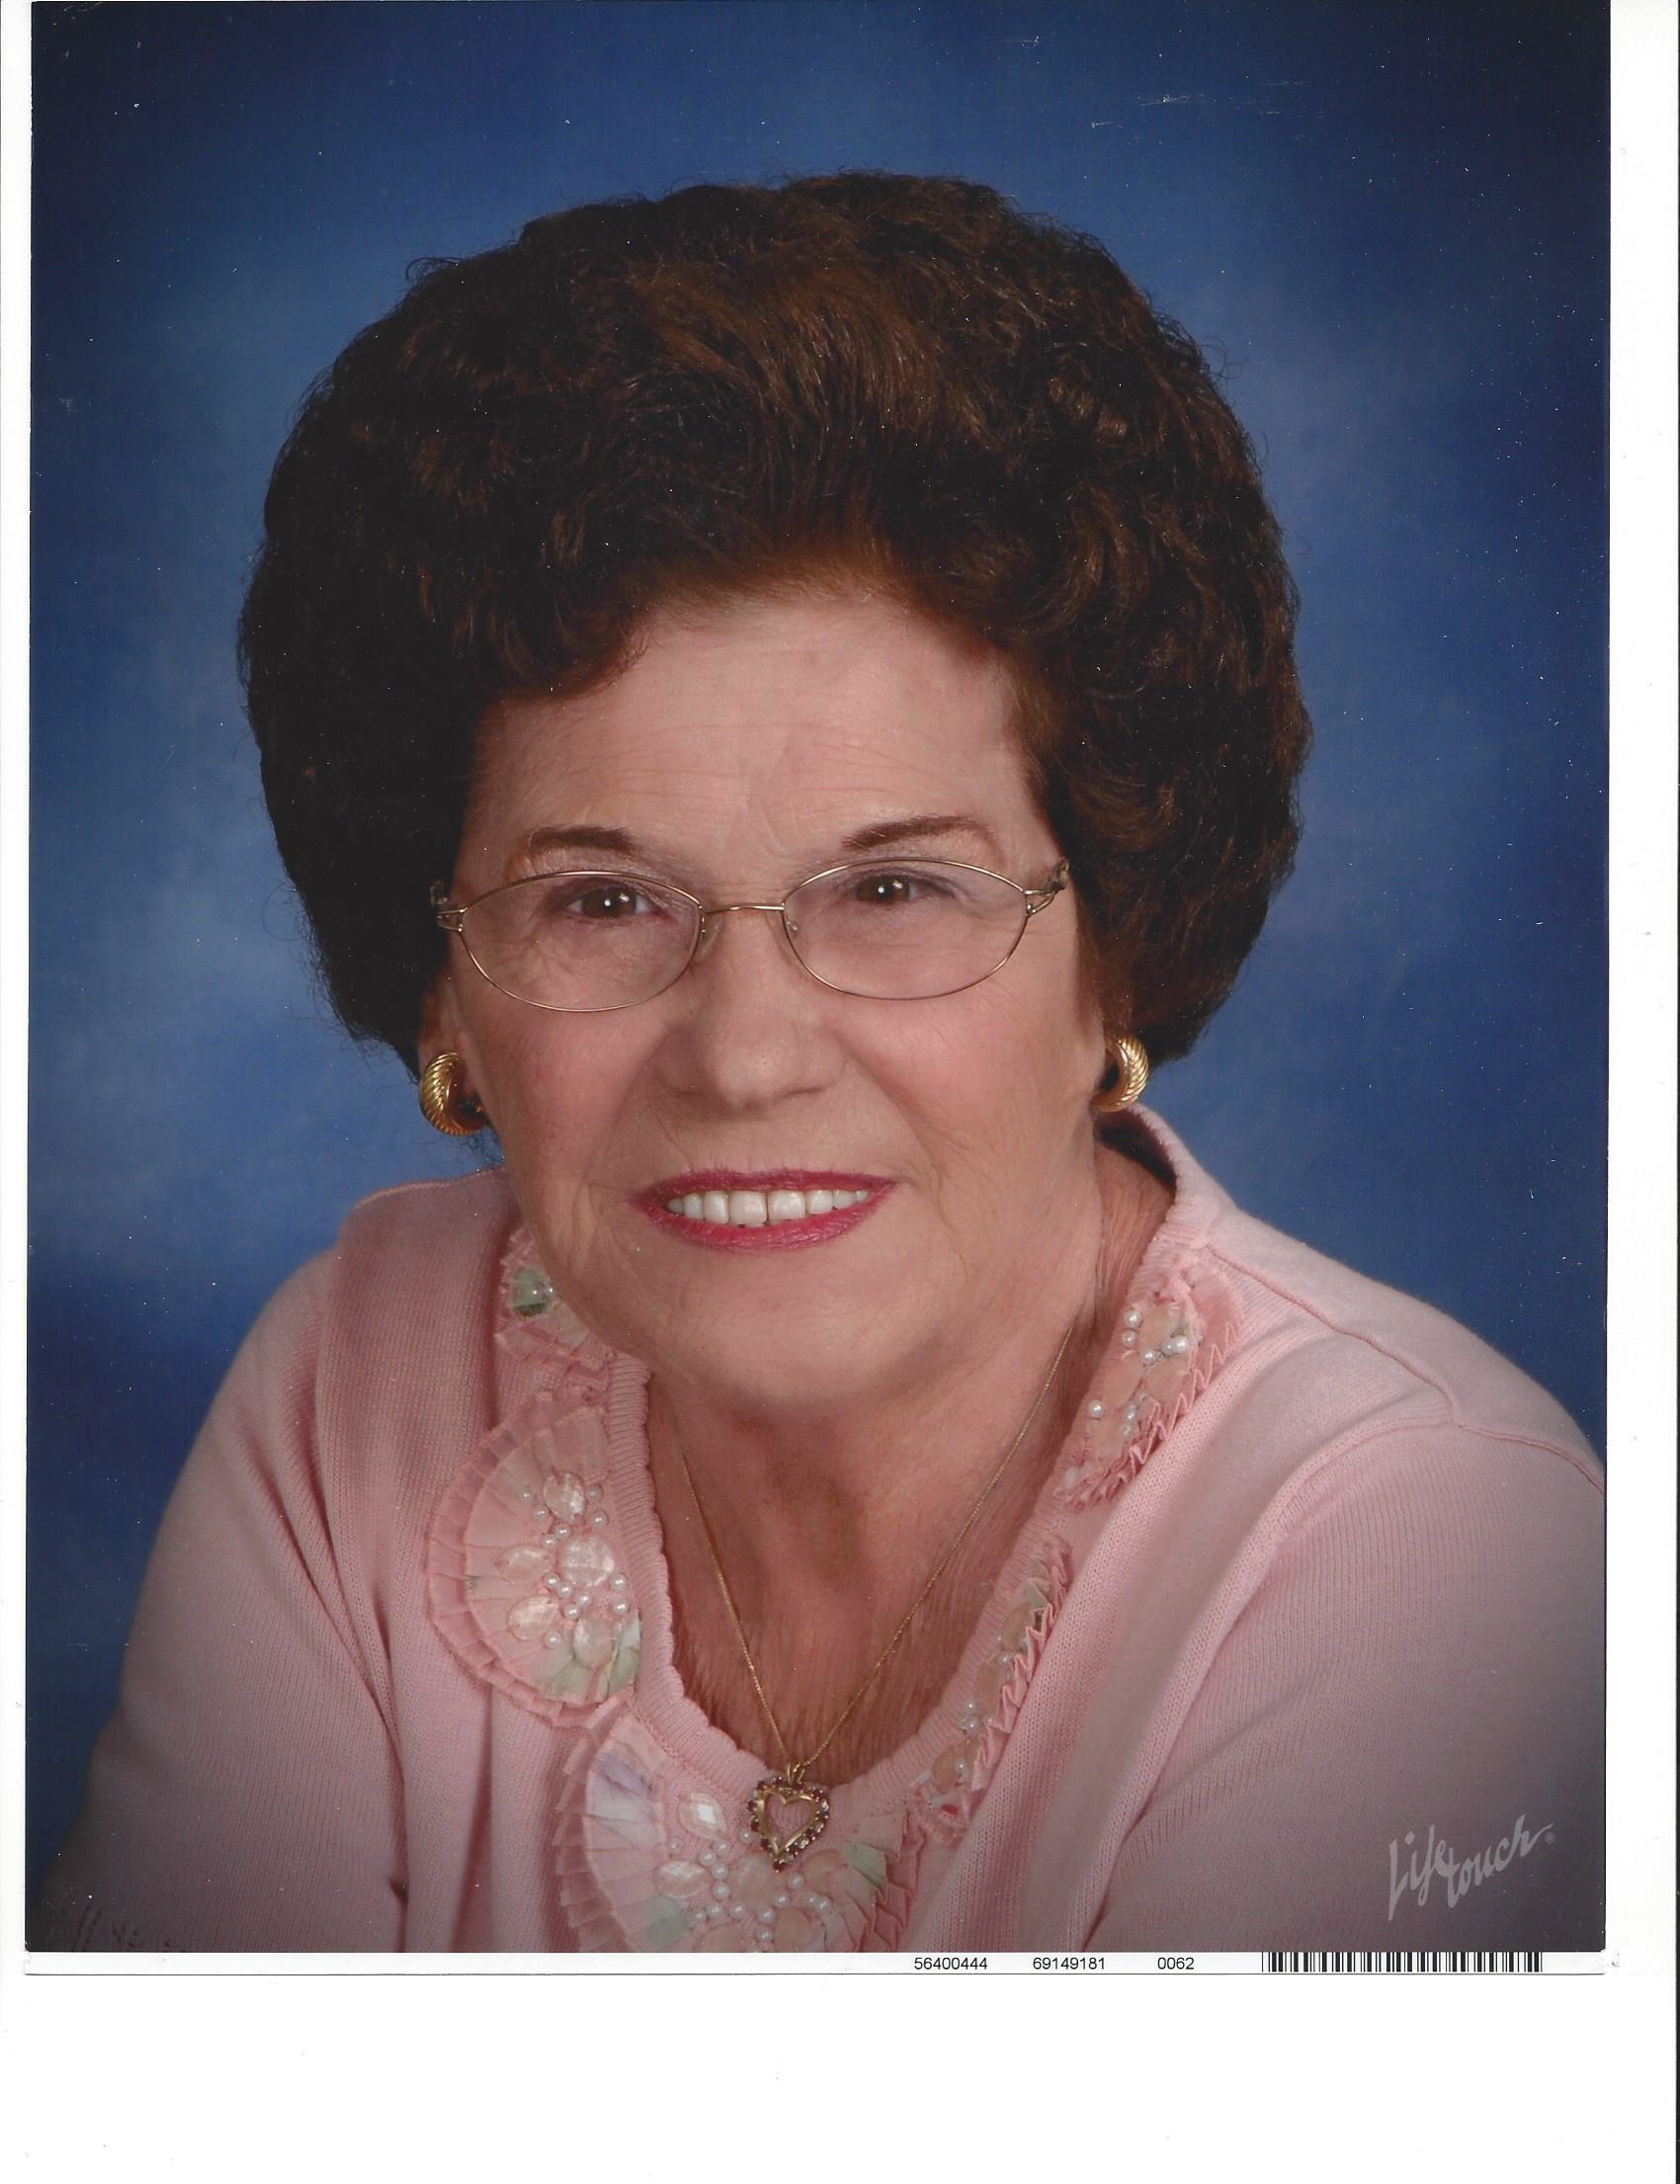 Obituary information for Shirley Harrington Jones